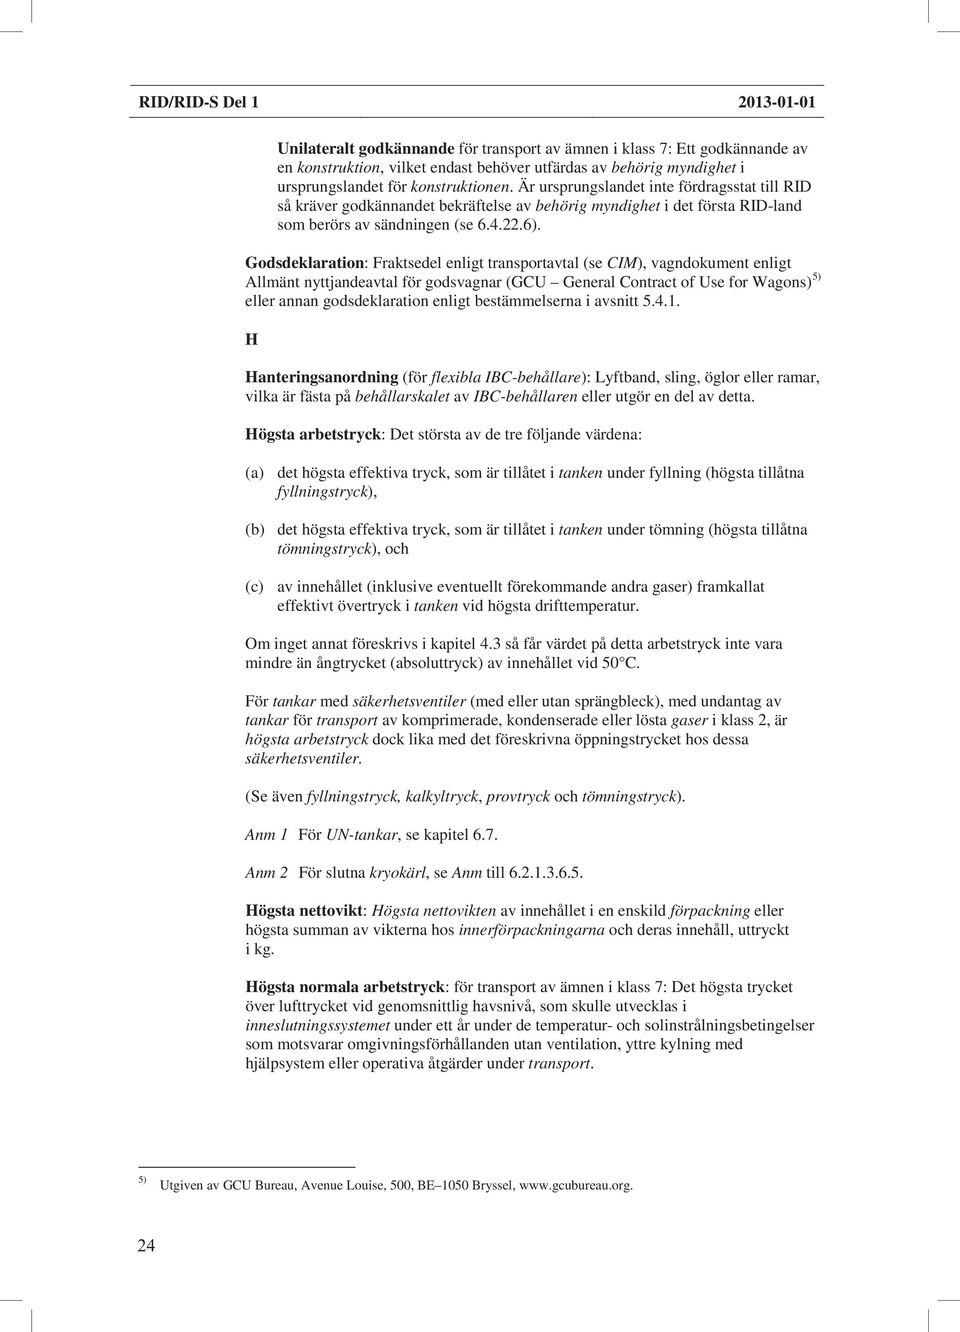 Godsdeklaration: Fraktsedel enligt transportavtal (se CIM), vagndokument enligt Allmänt nyttjandeavtal för godsvagnar (GCU General Contract of Use for Wagons) 5) eller annan godsdeklaration enligt